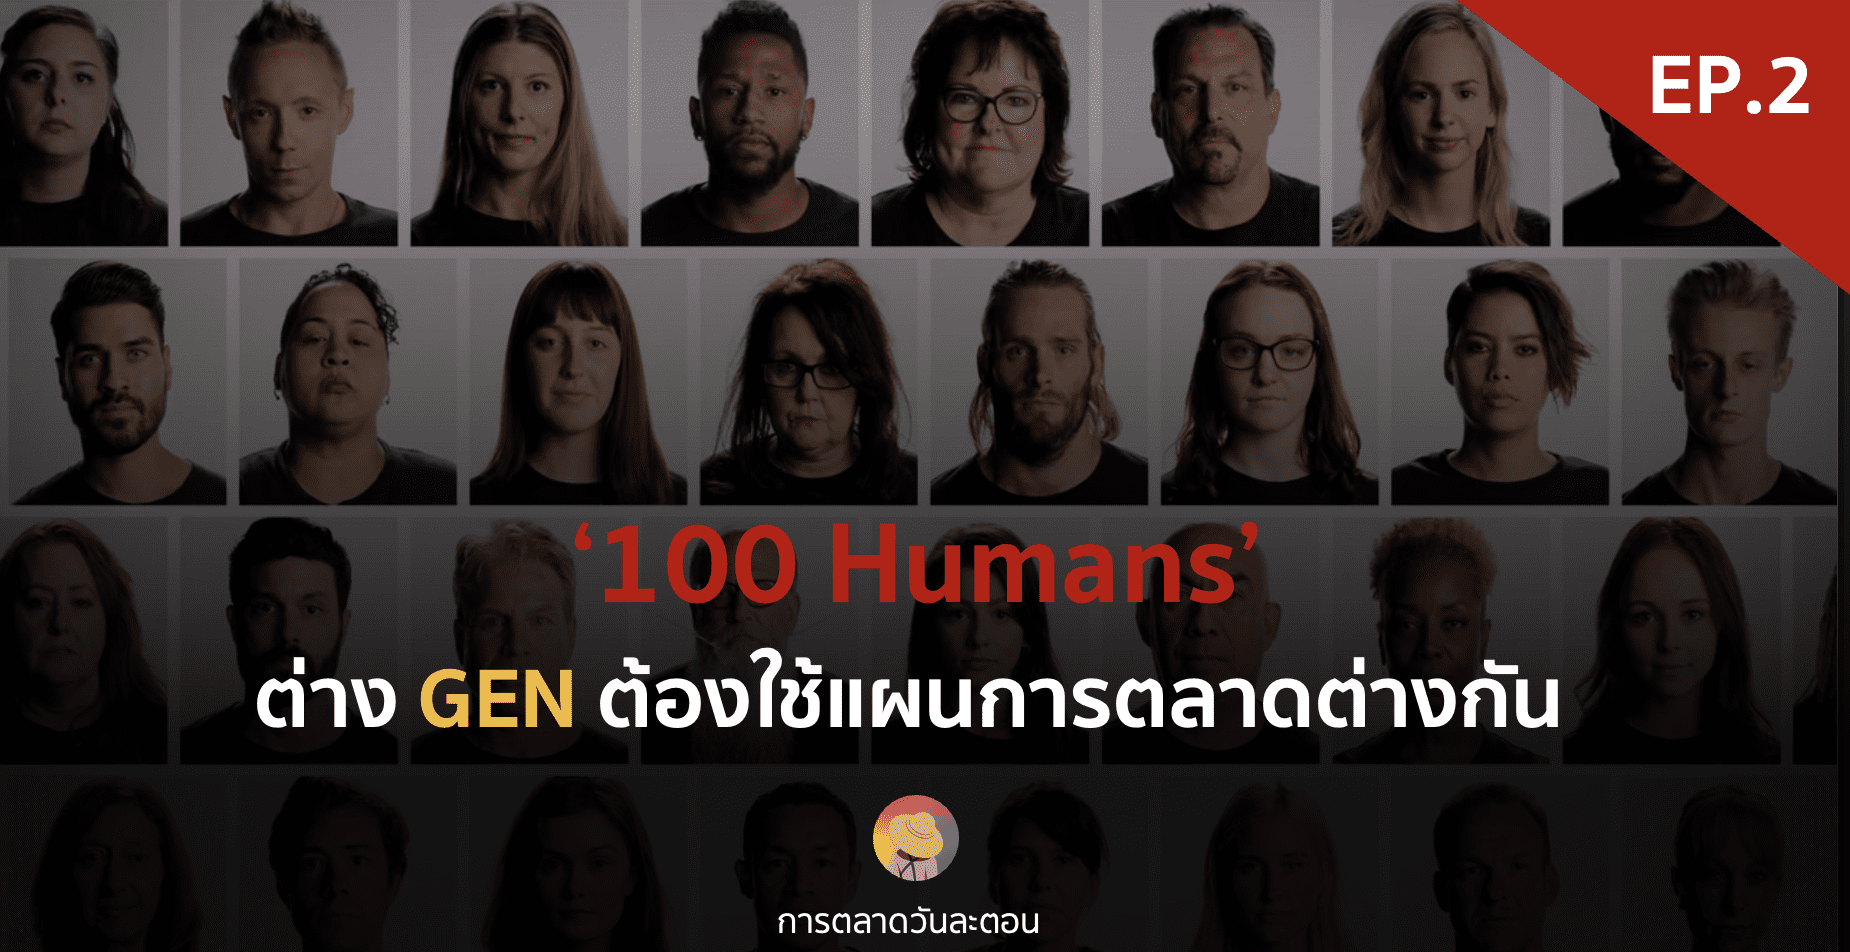 ต่าง GEN ต้องใช้แผนการตลาดต่างกัน ‘100 Humans’ – EP. 2